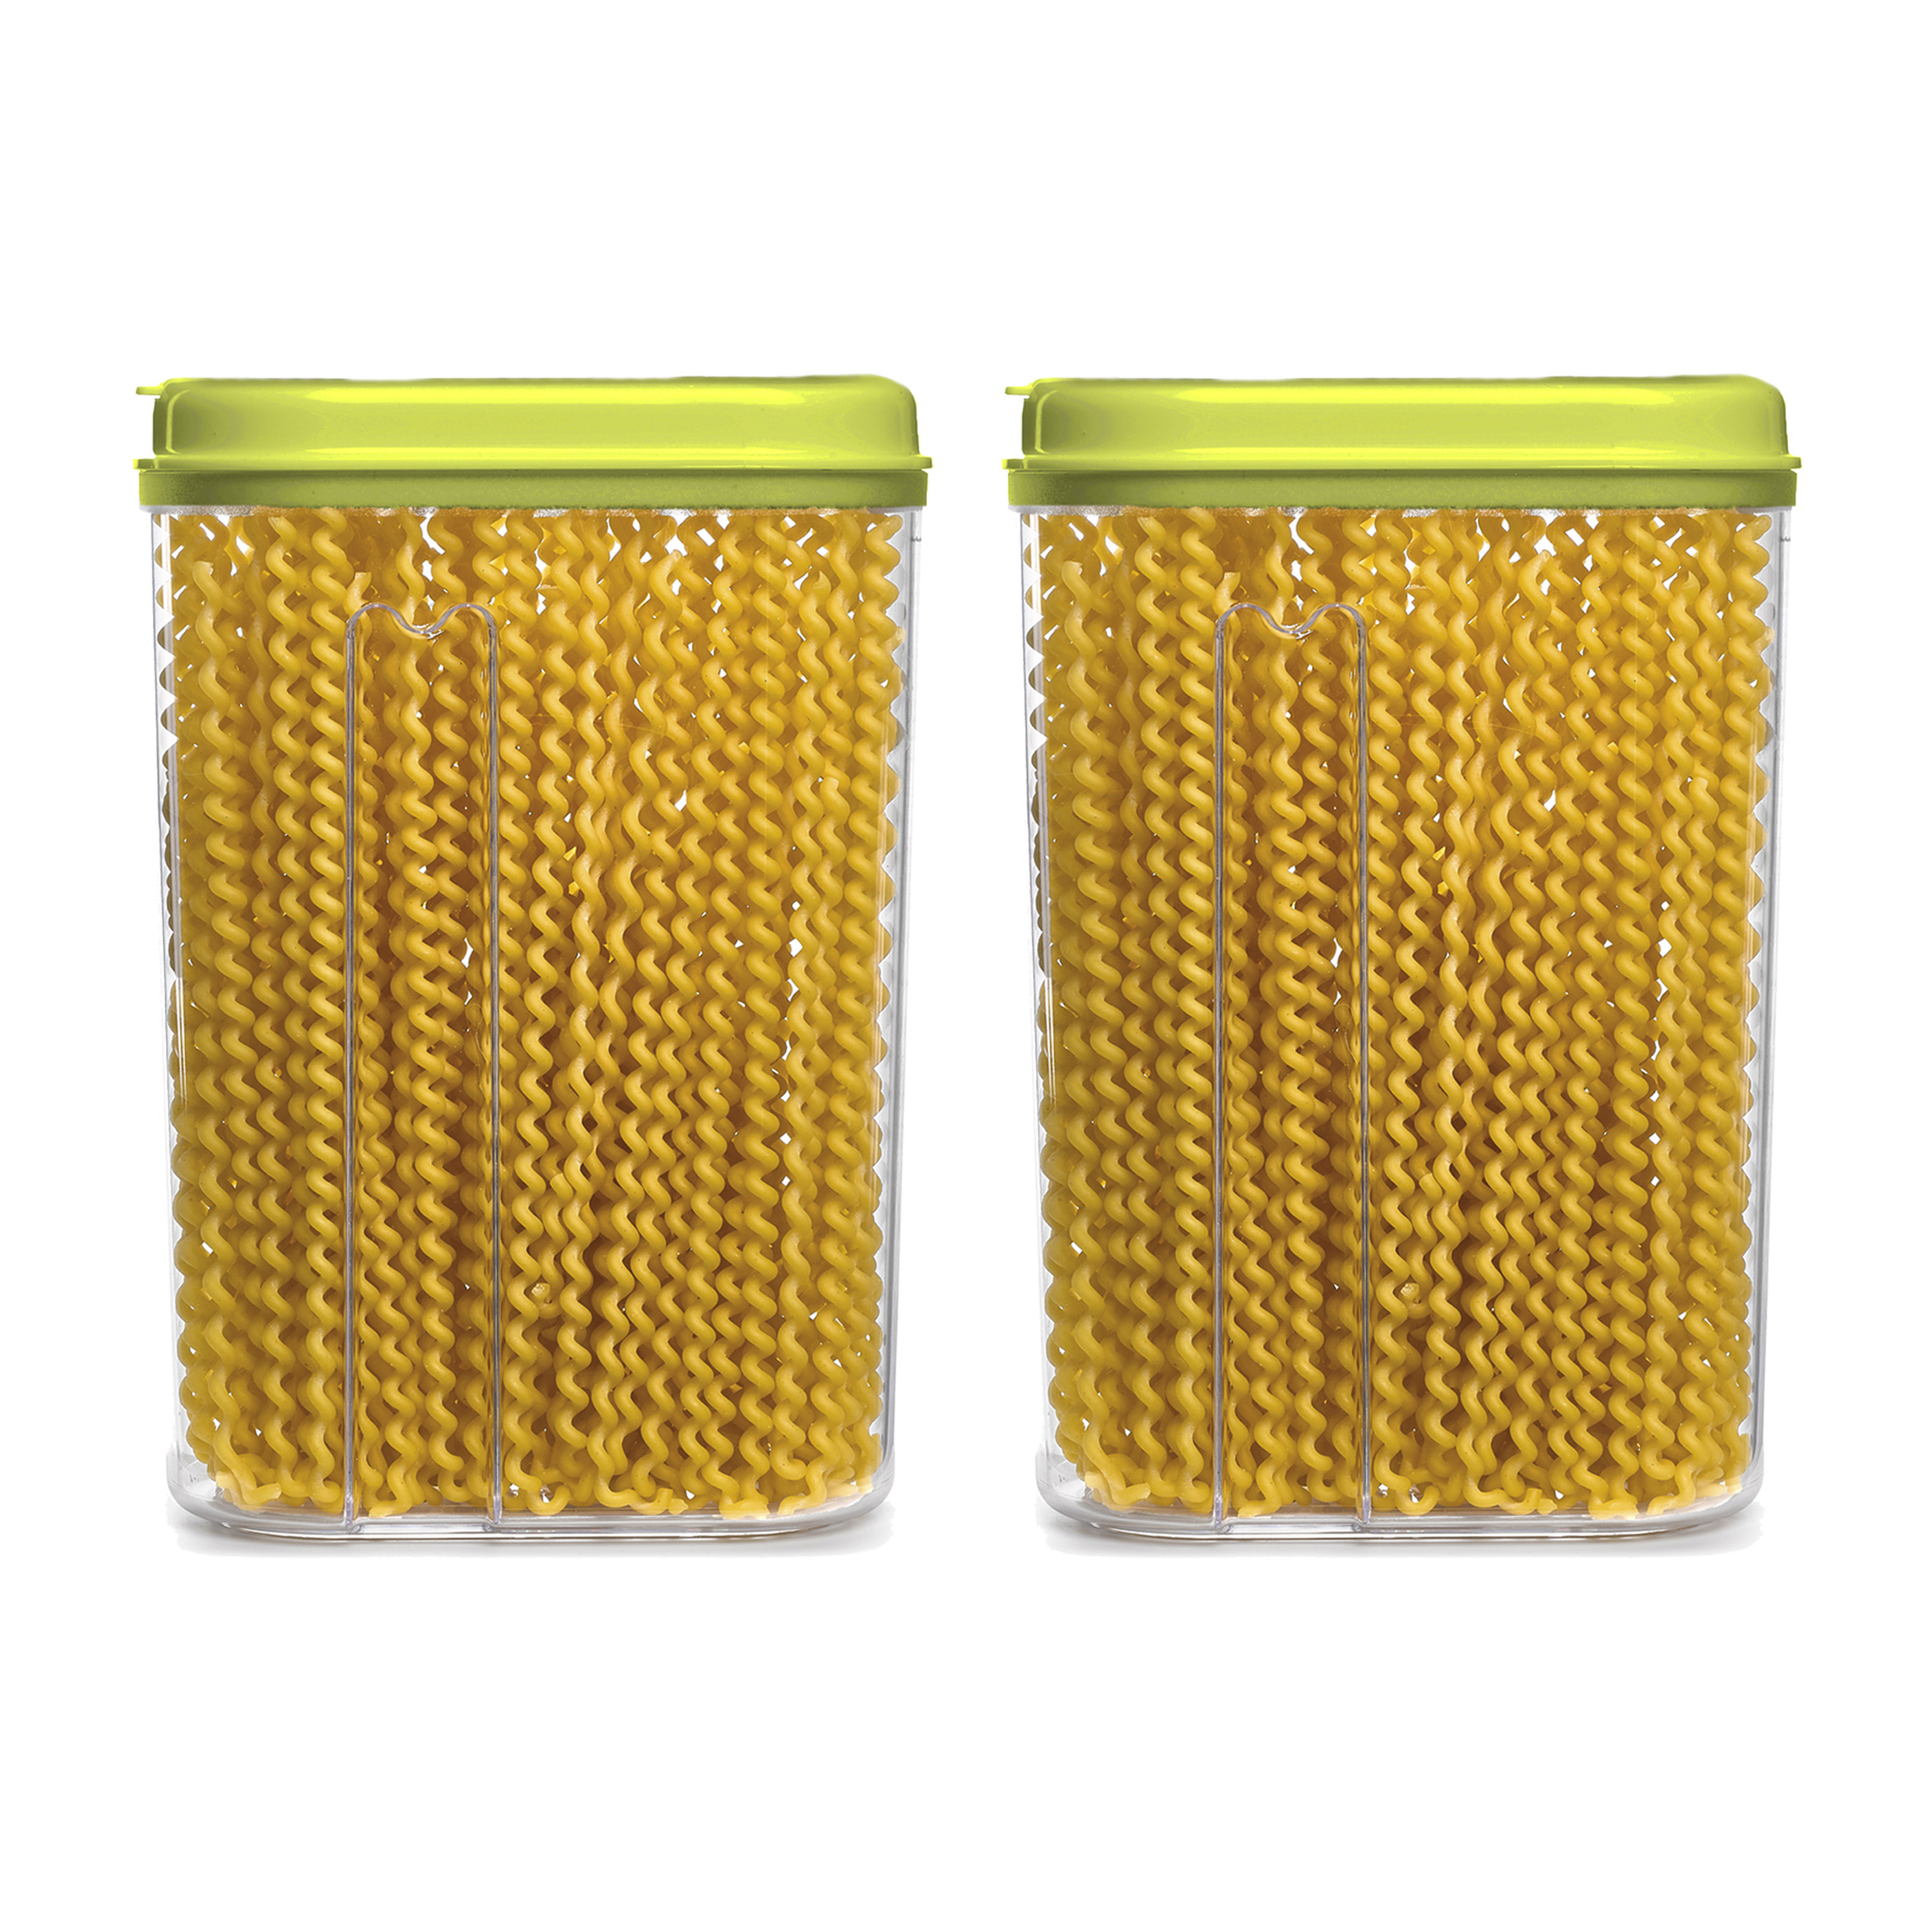 PlasticForte Voedselcontainer strooibus - 2x - groen - 1500 ml - kunststof - 15 x 8 x 23 cm - voorraadpot -